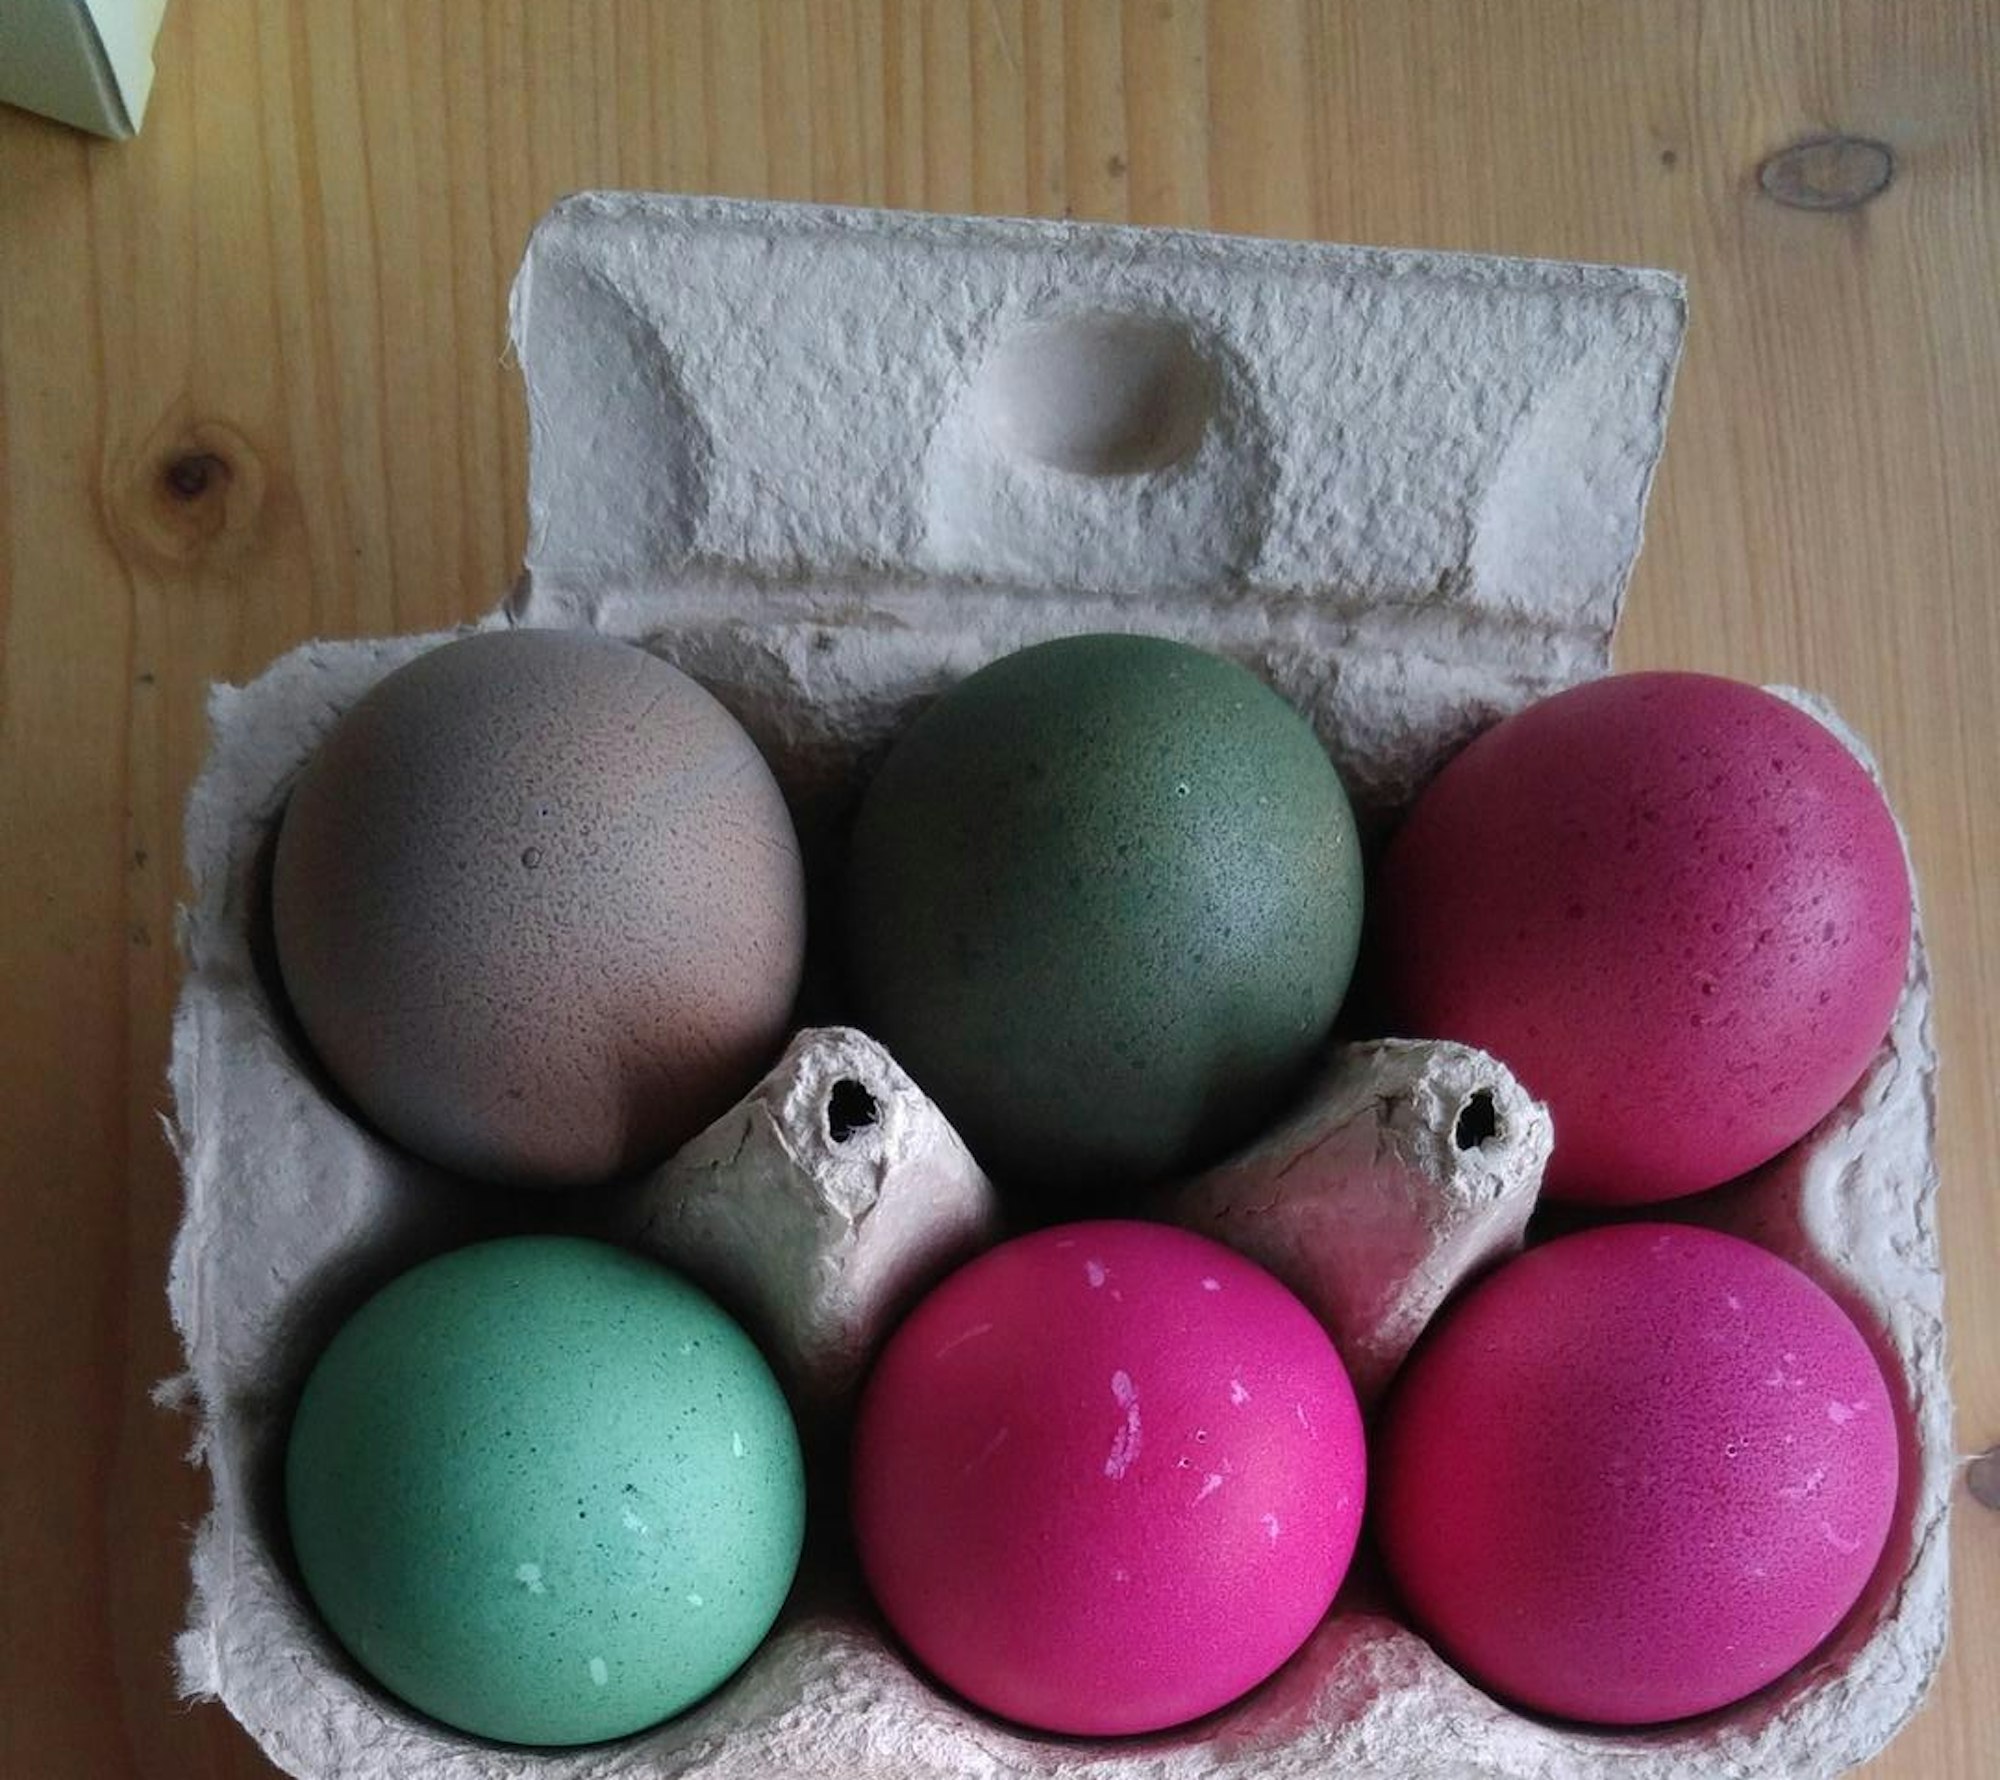 Schoenenberger7 Eier Packung